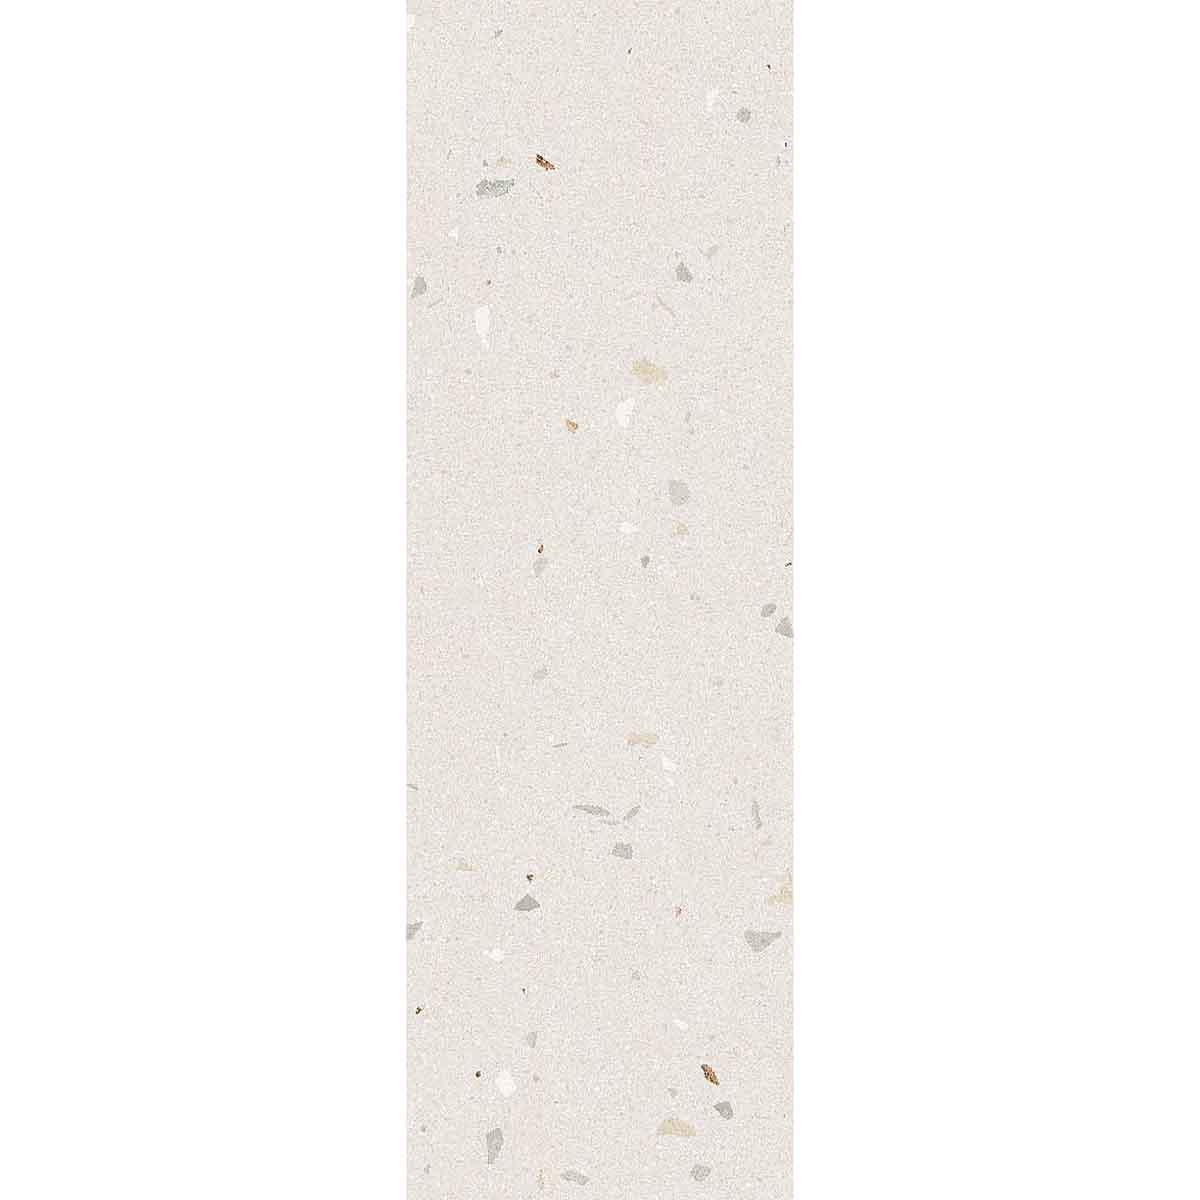 arcana croccante r topping menta terrazzo ceramic wall tile 32x99cm deluxe bathrooms ireland